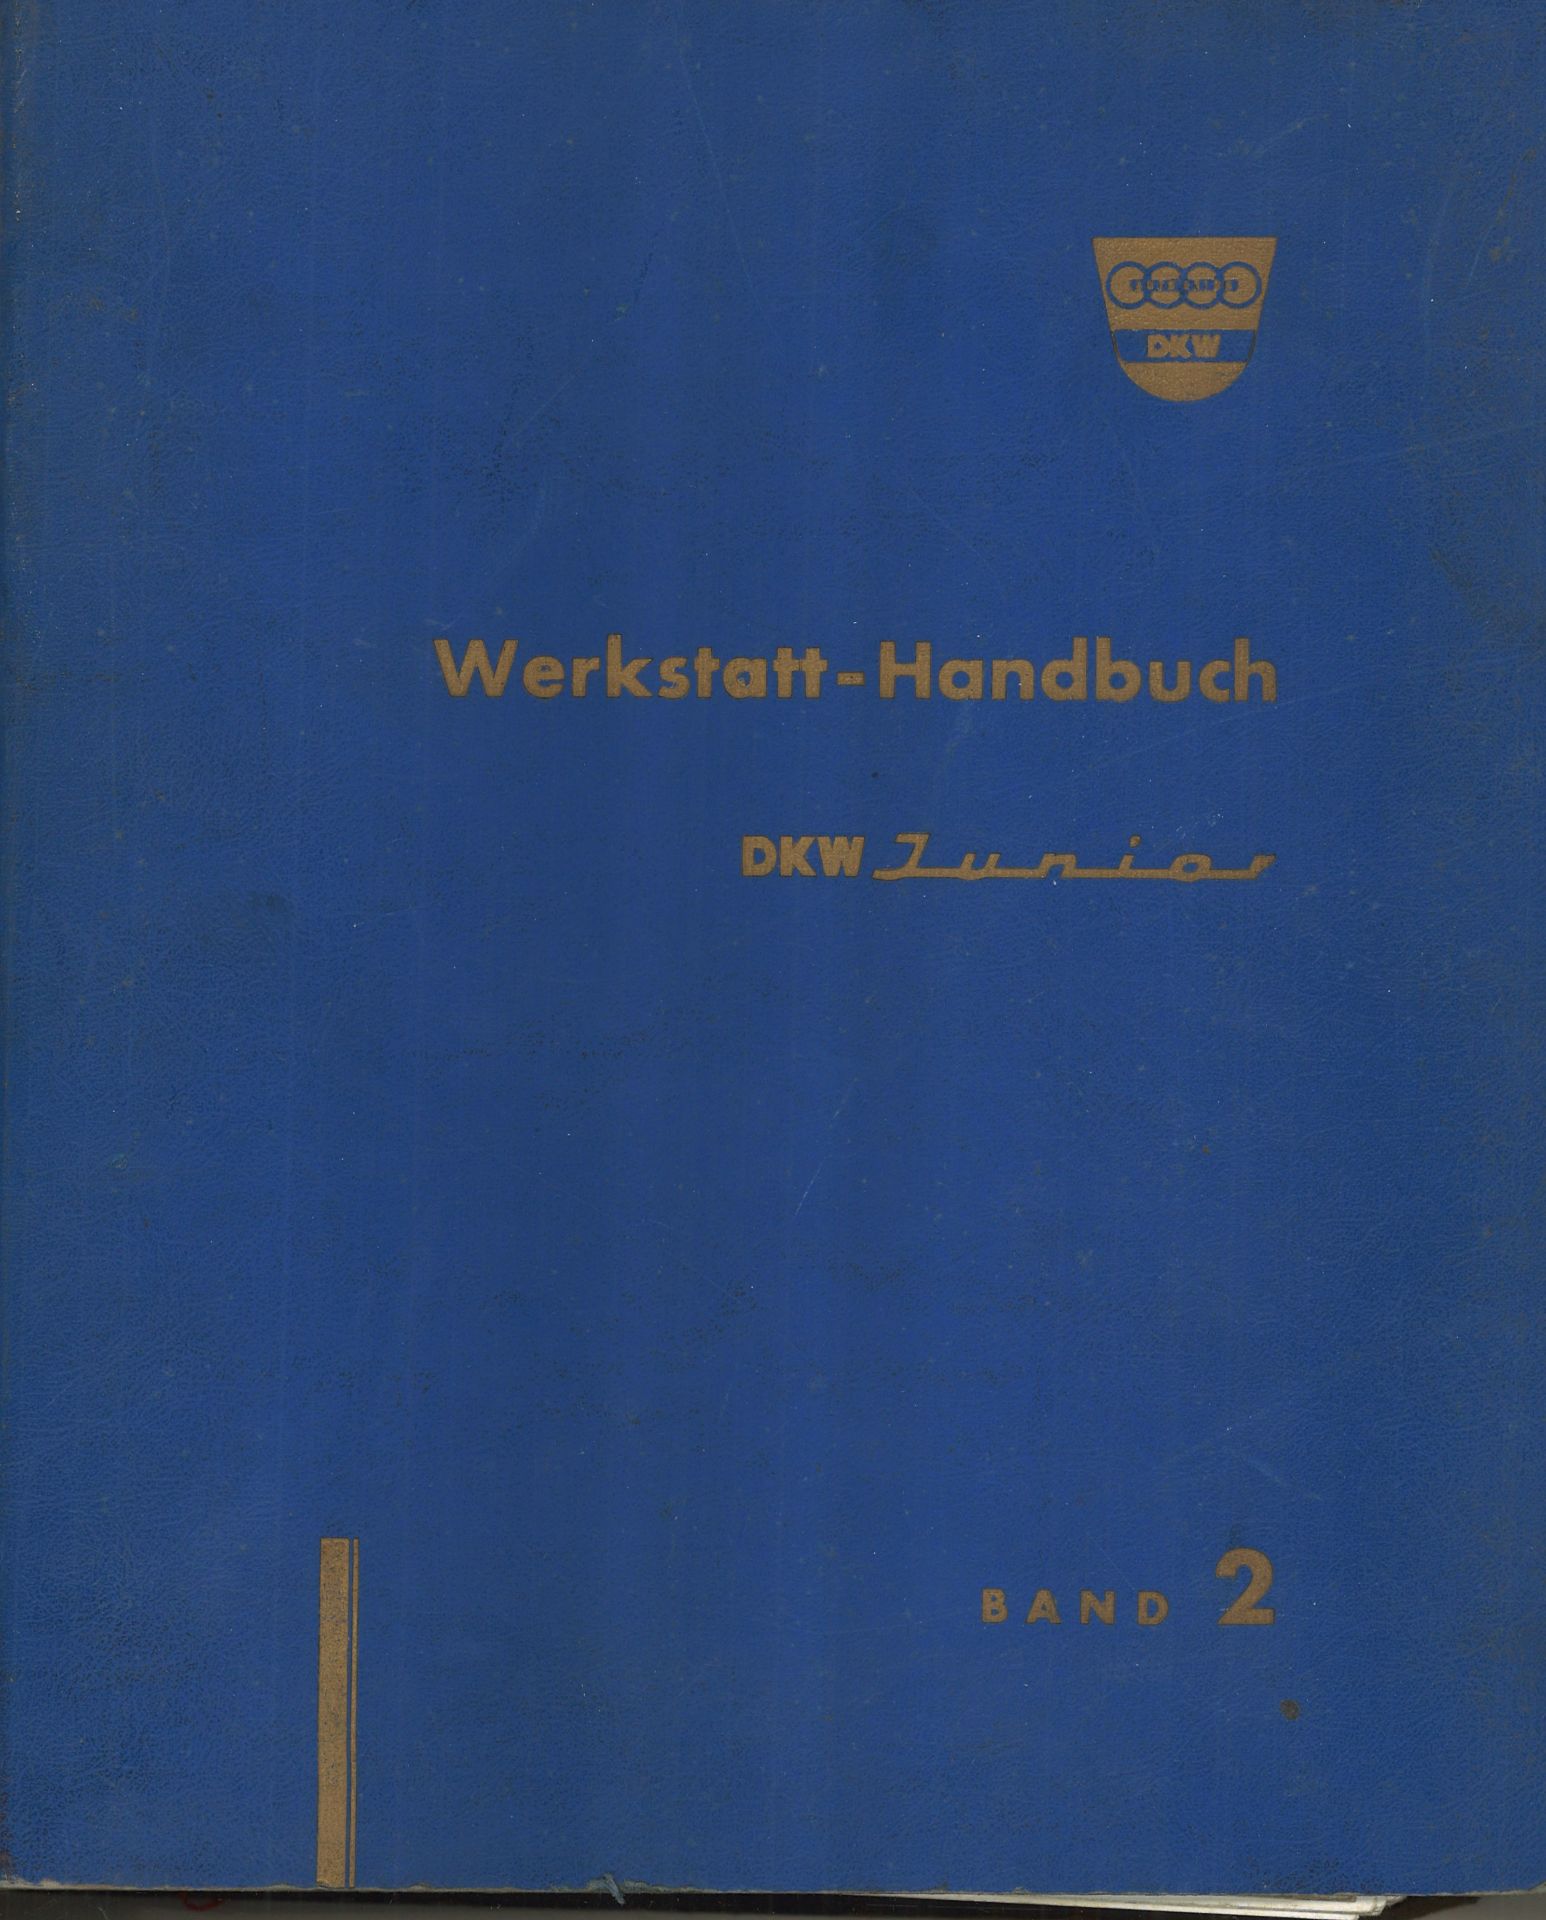 Aus Oldtimer Sammlung! Auto Union DKW Werkstatt - Handbuch DKW Junior Band 2. Umfasst die Gruppen: